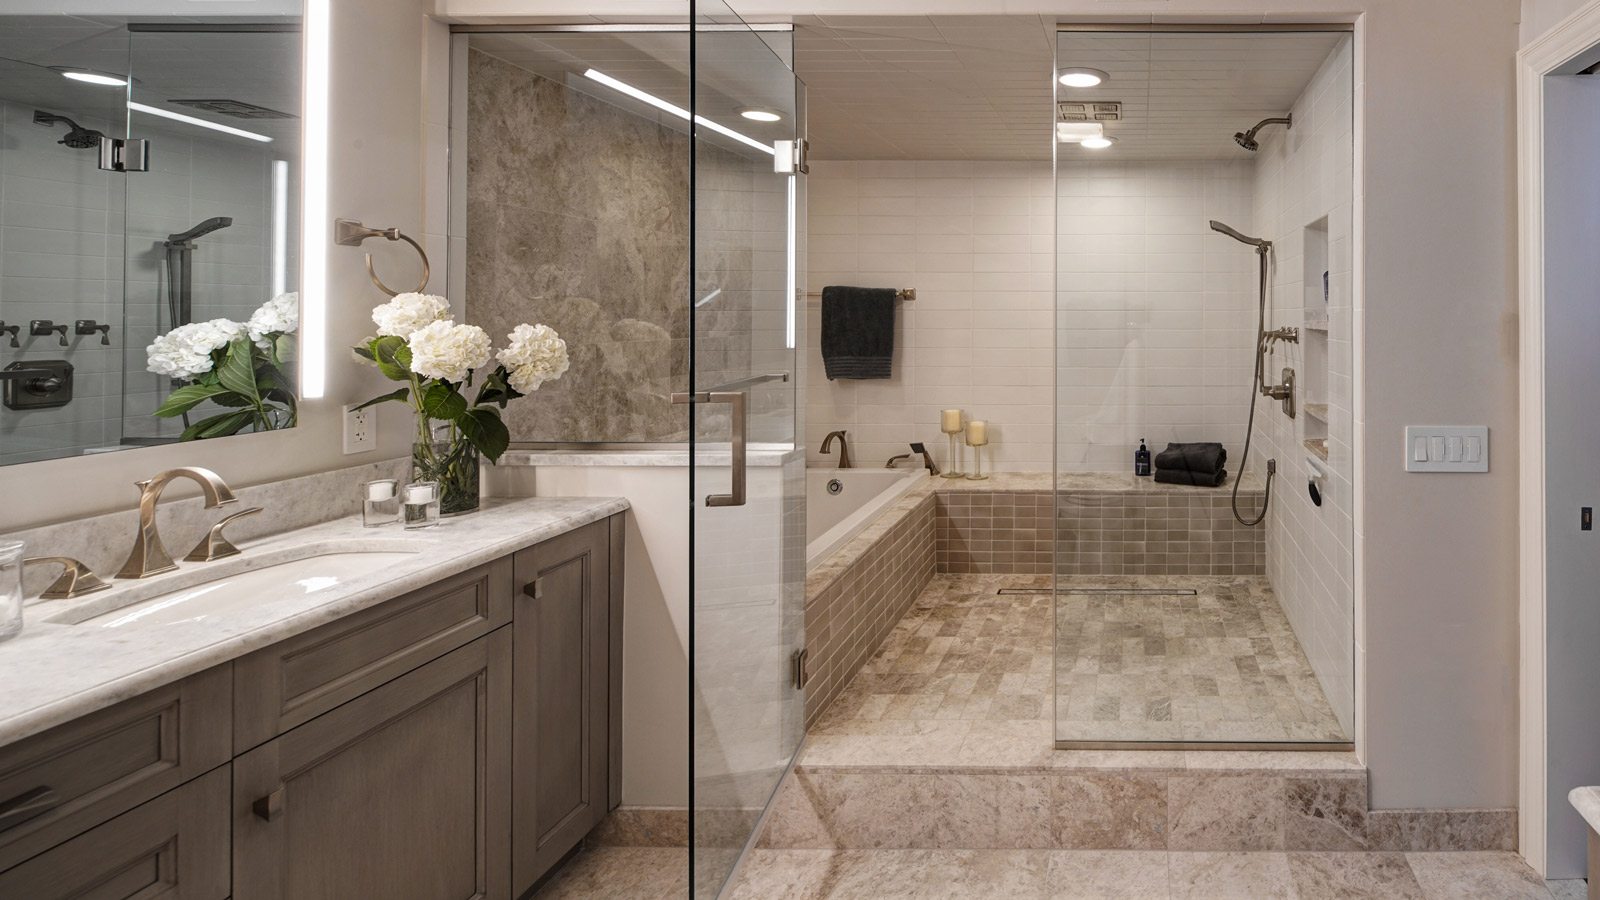 Chicago Condo Master Bath Renovation drury design